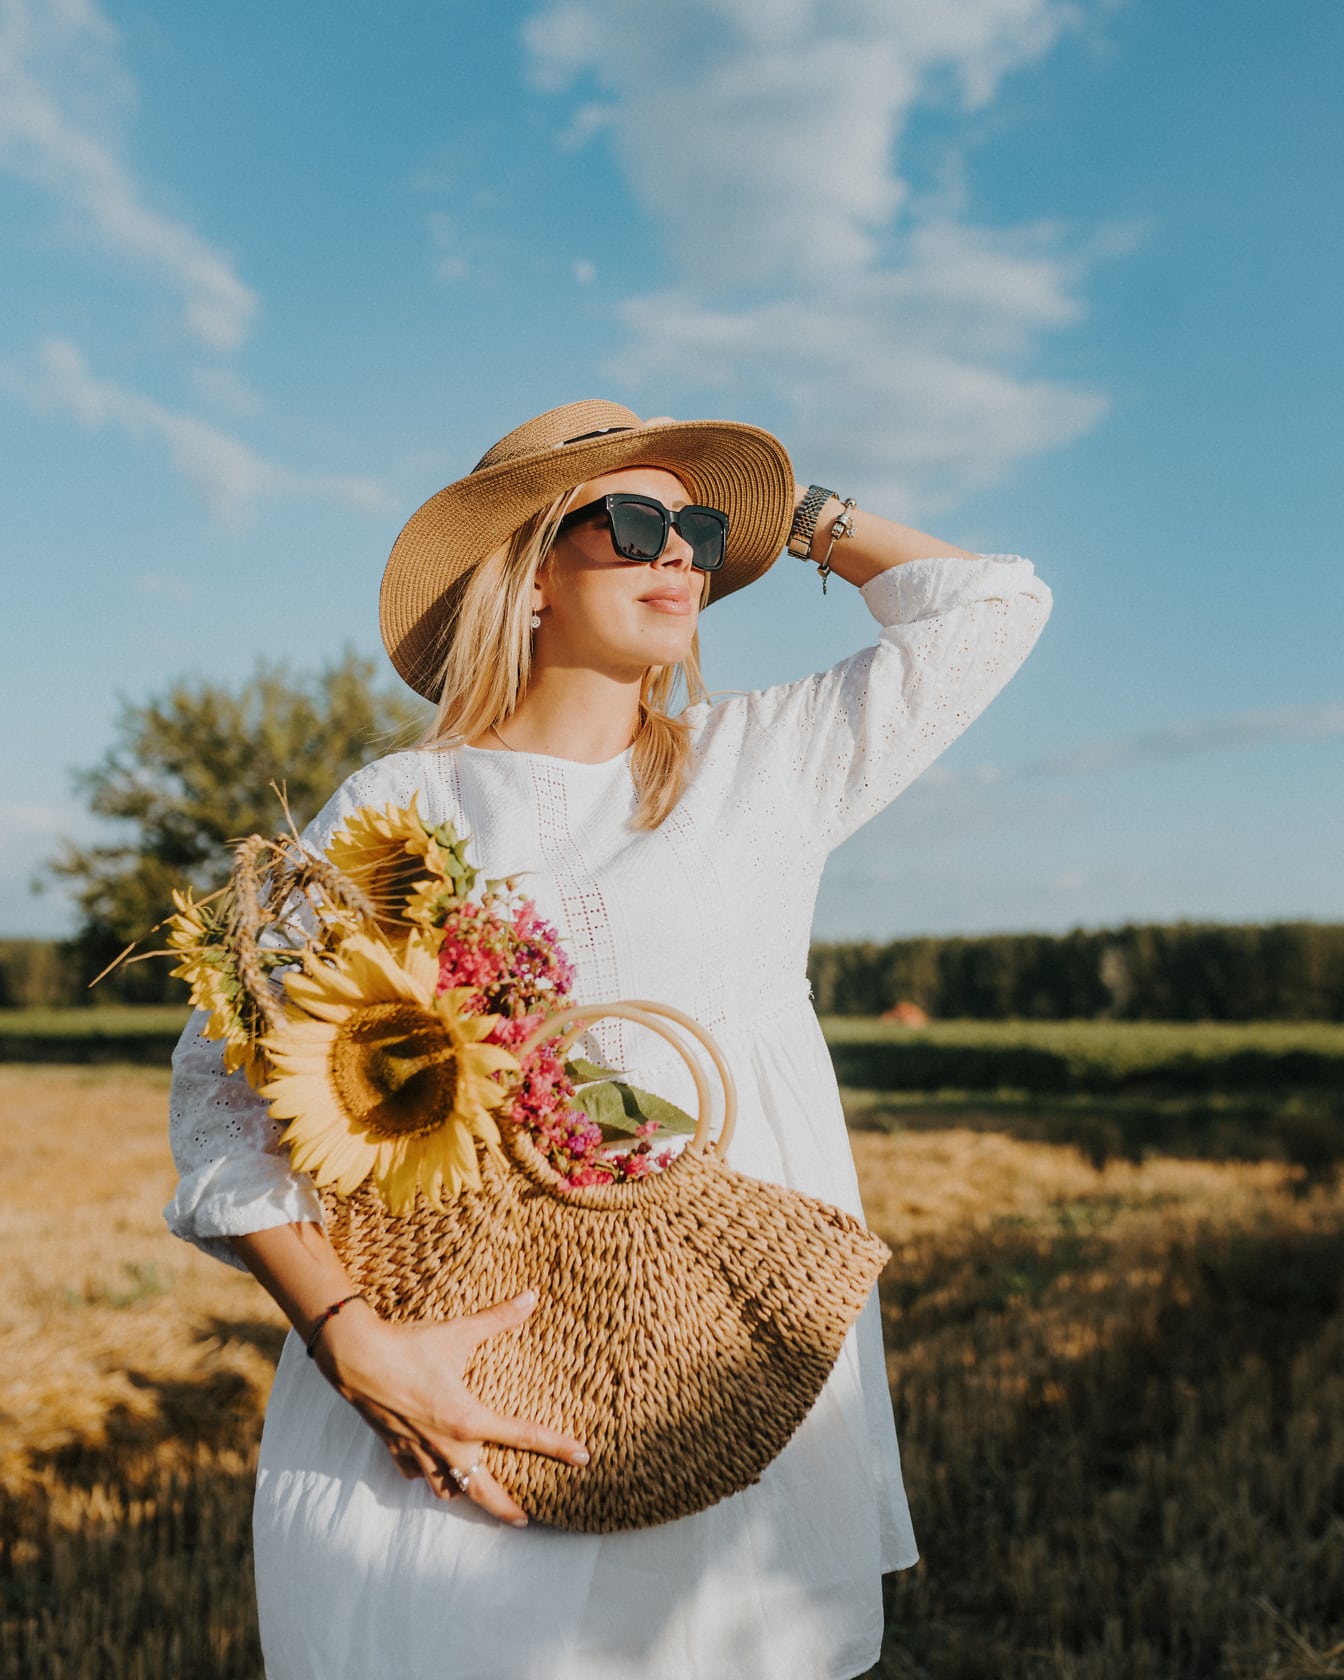 Portret van verbluffend mooie veedrijfster die geniet van het zonnebaden in een veld in een witte jurk en een strohoed terwijl ze een rieten mand met zonnebloemen vasthoudt